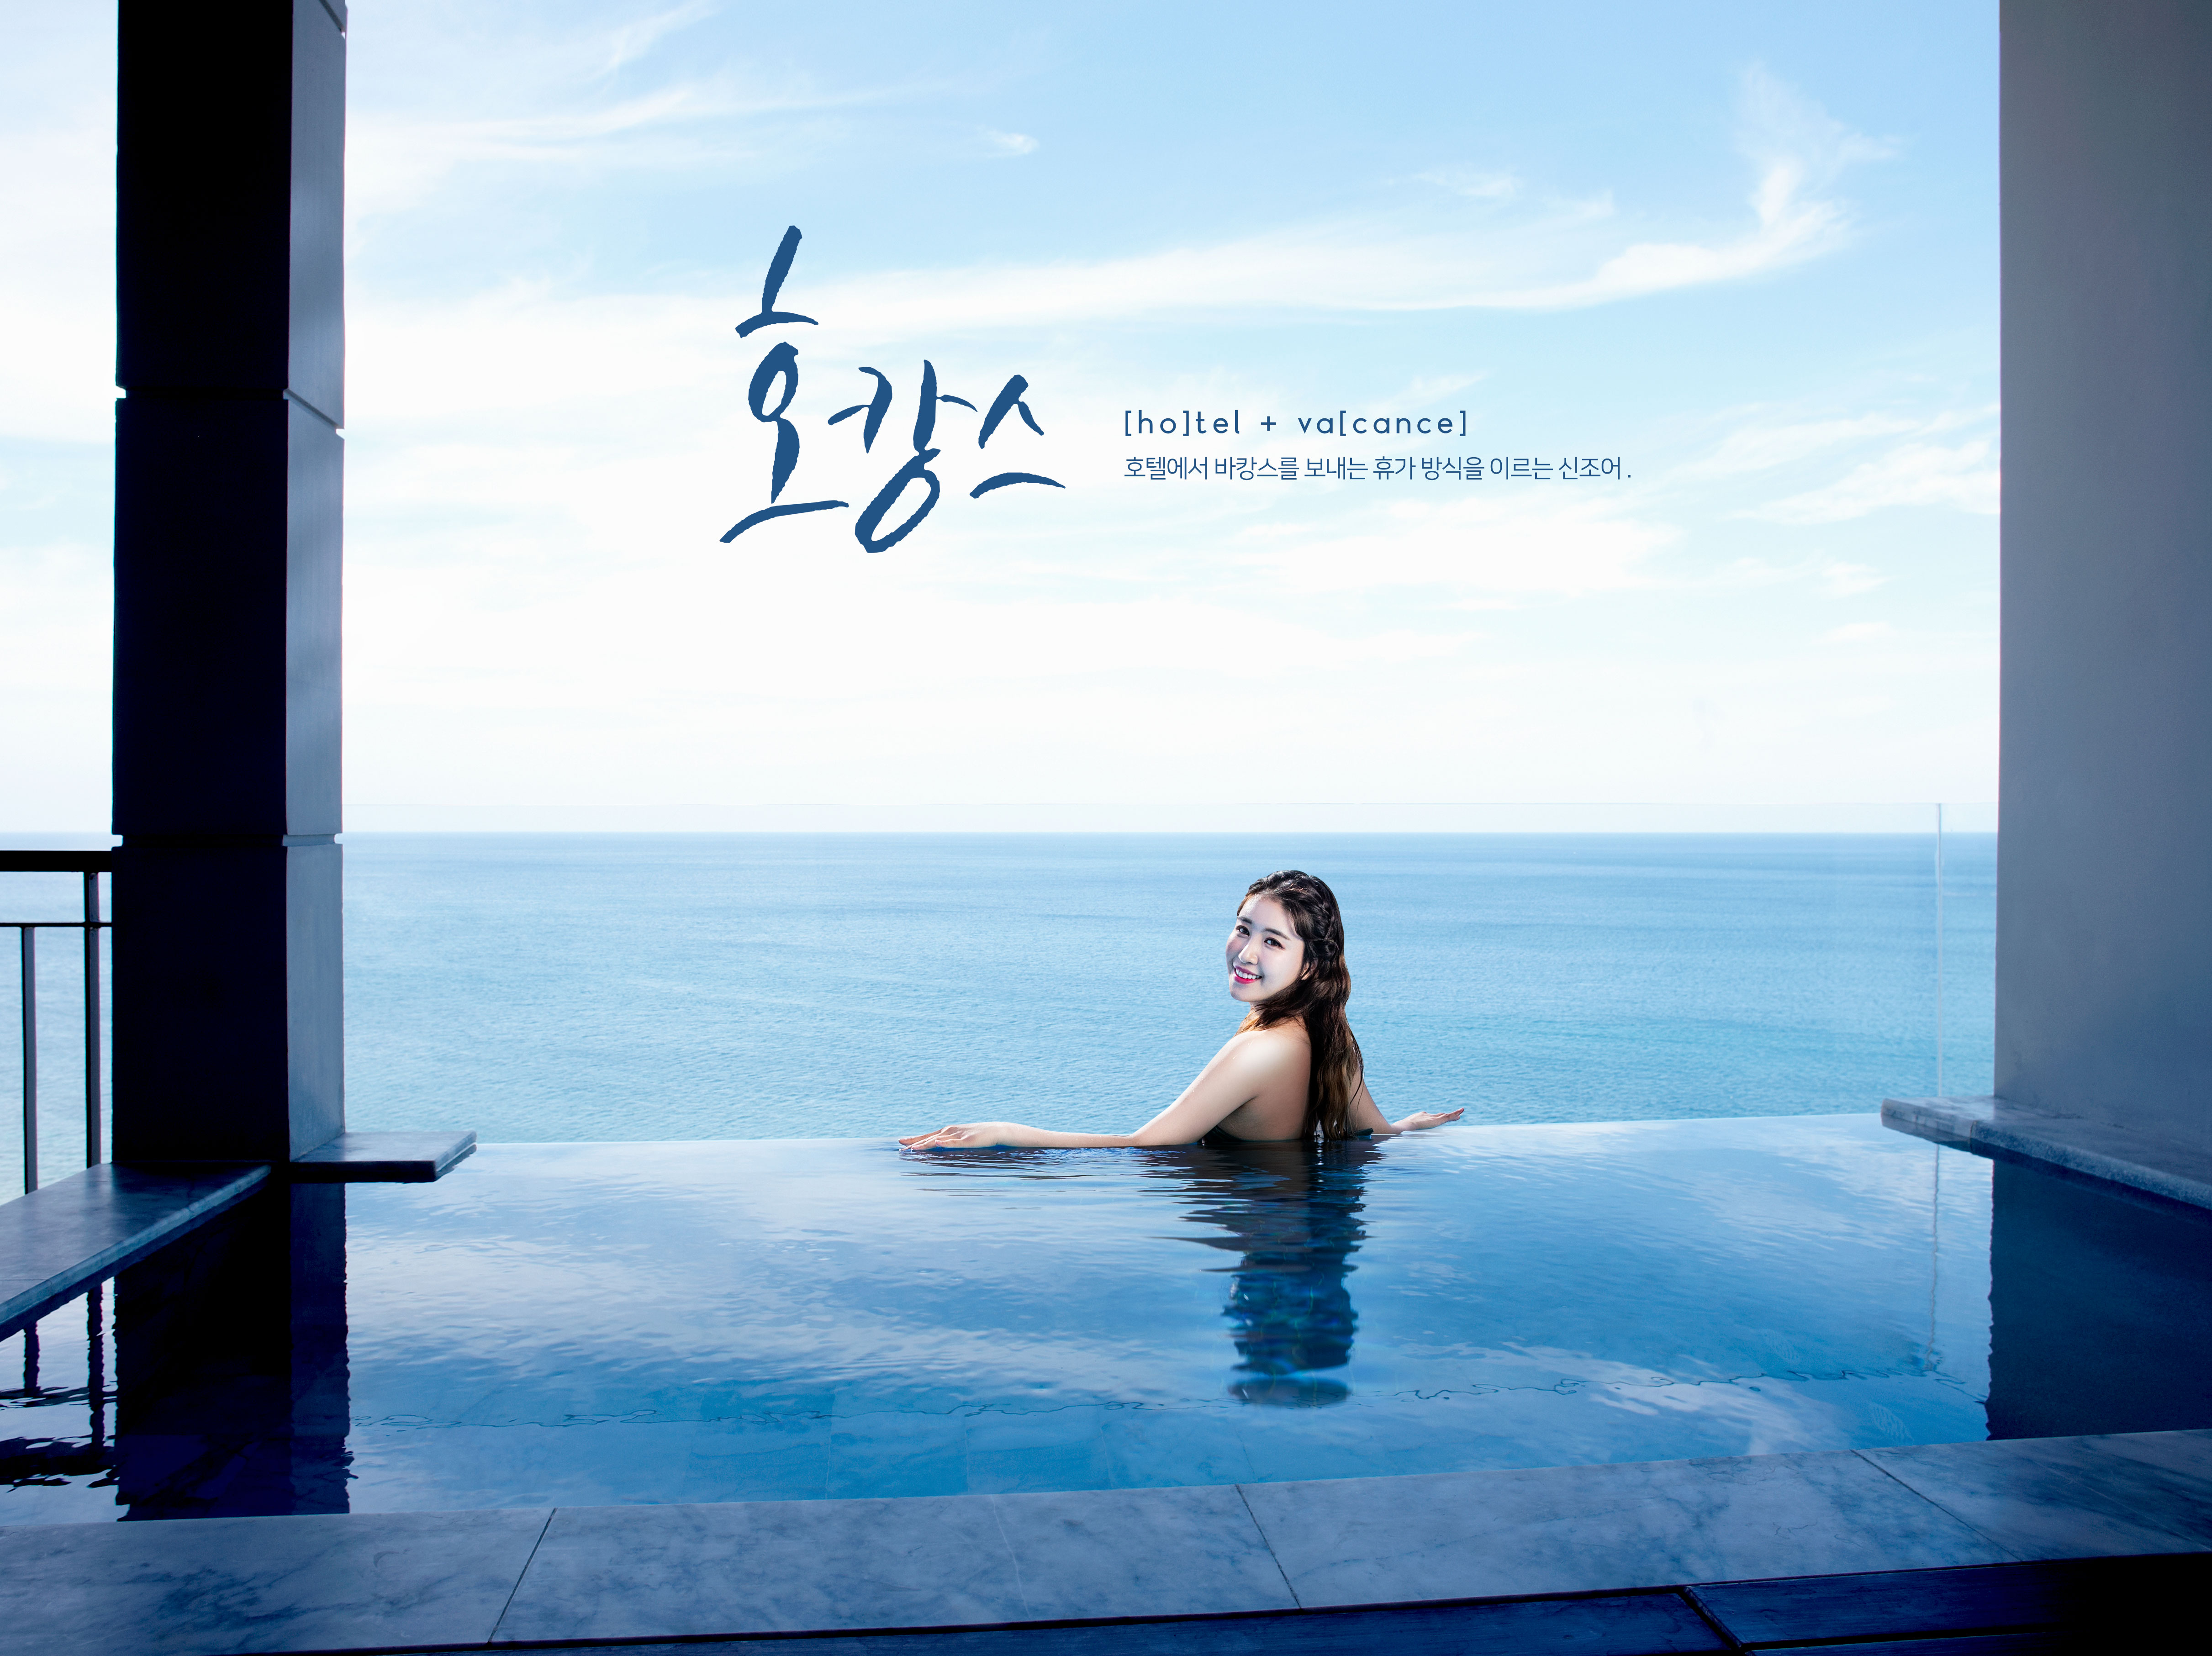 旅行度假海景假日酒店推广宣传广告海报模板套装插图(1)